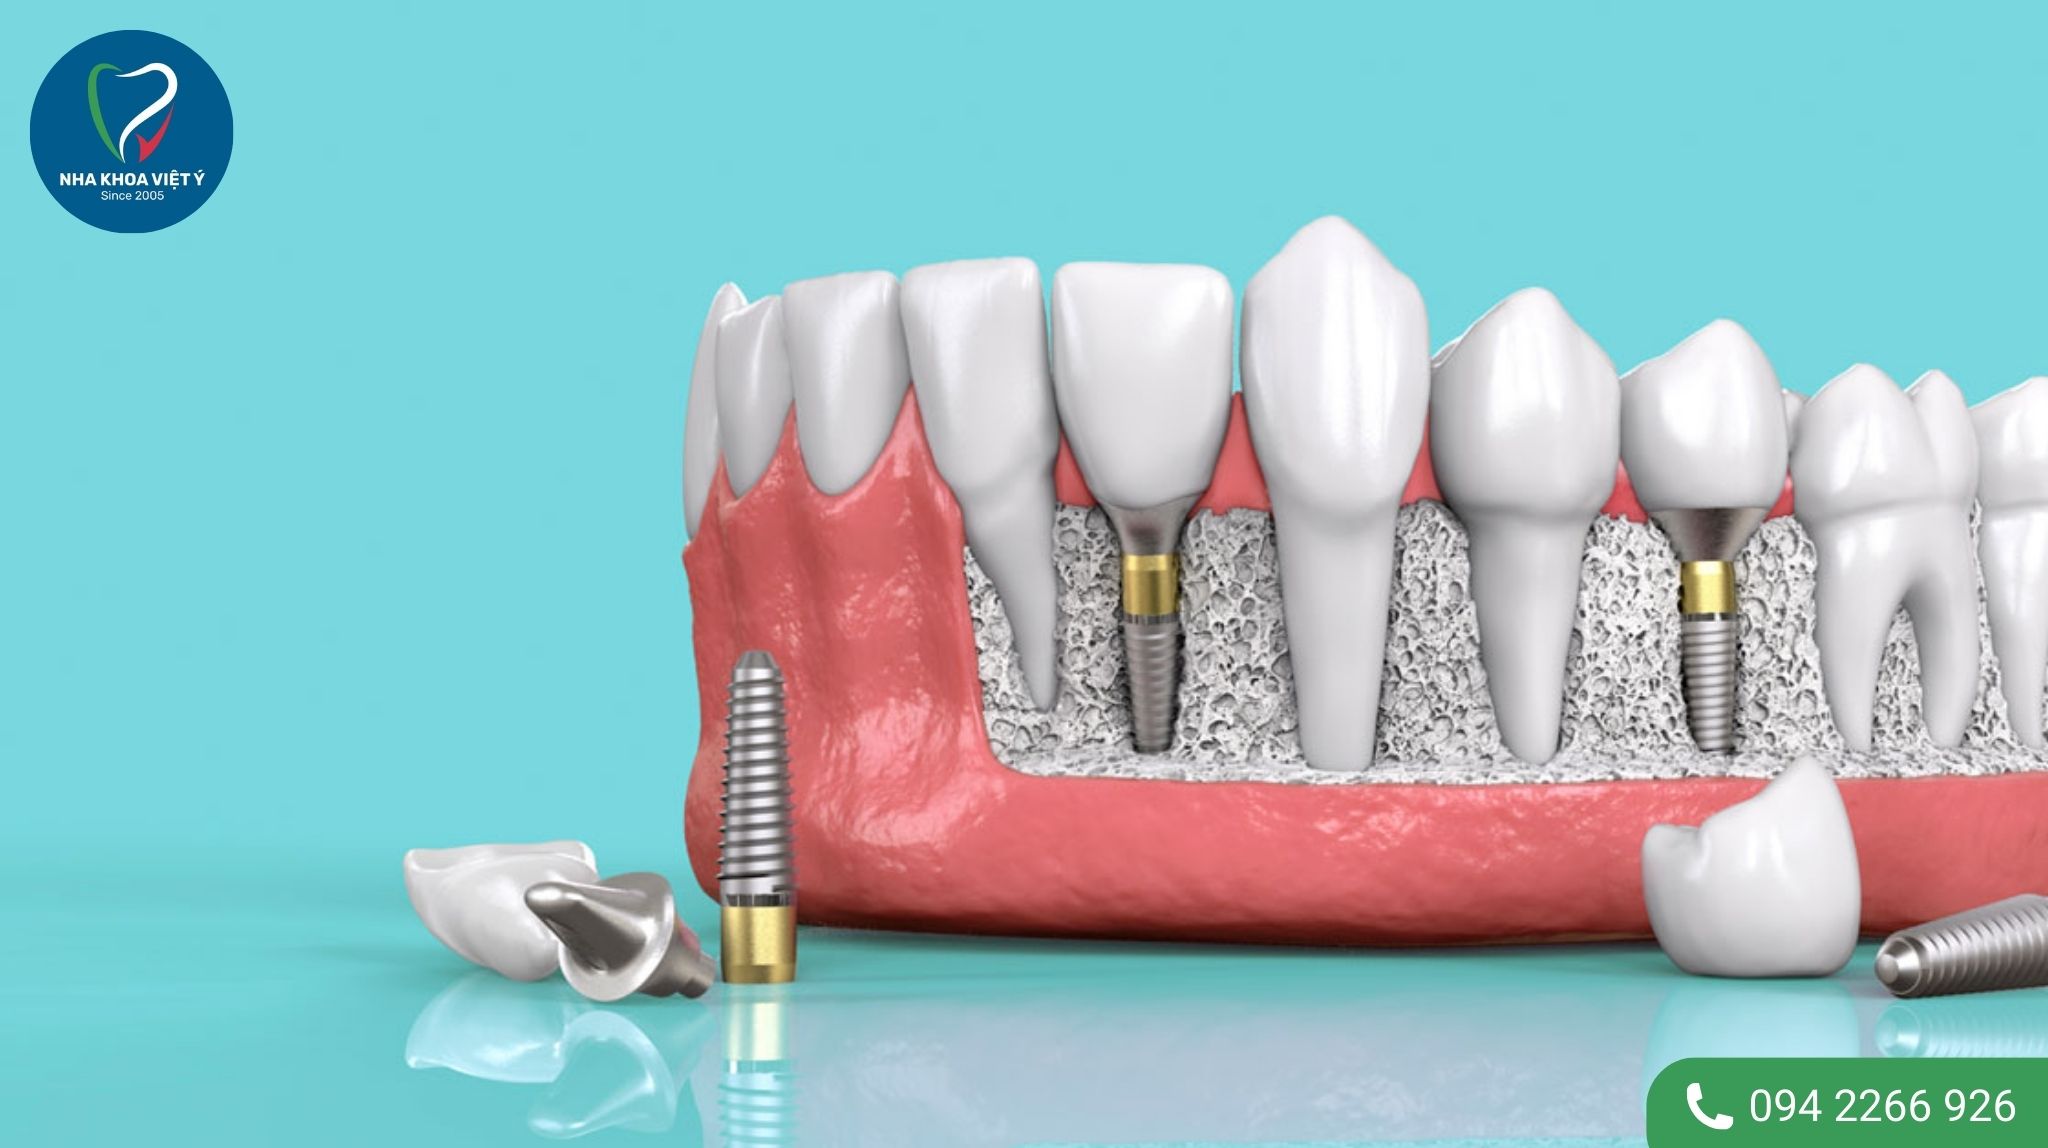 Trồng răng implant mất bao lâu?